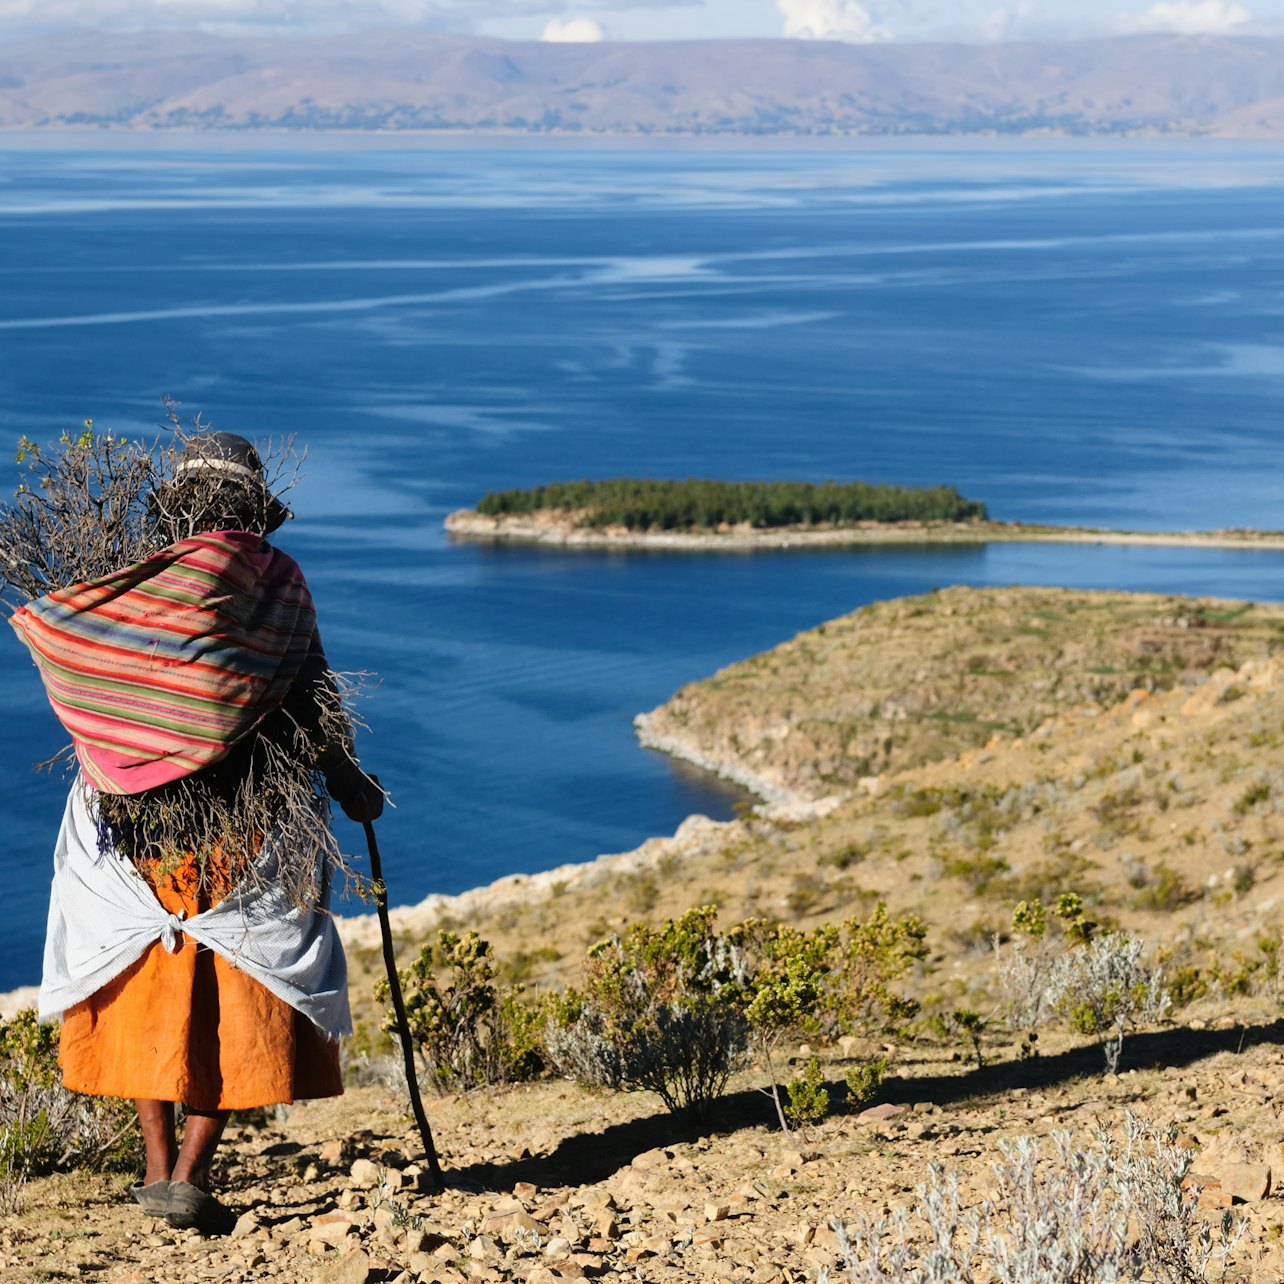 Excursión al lago Titicaca desde Puno - Alojamientos en Puno